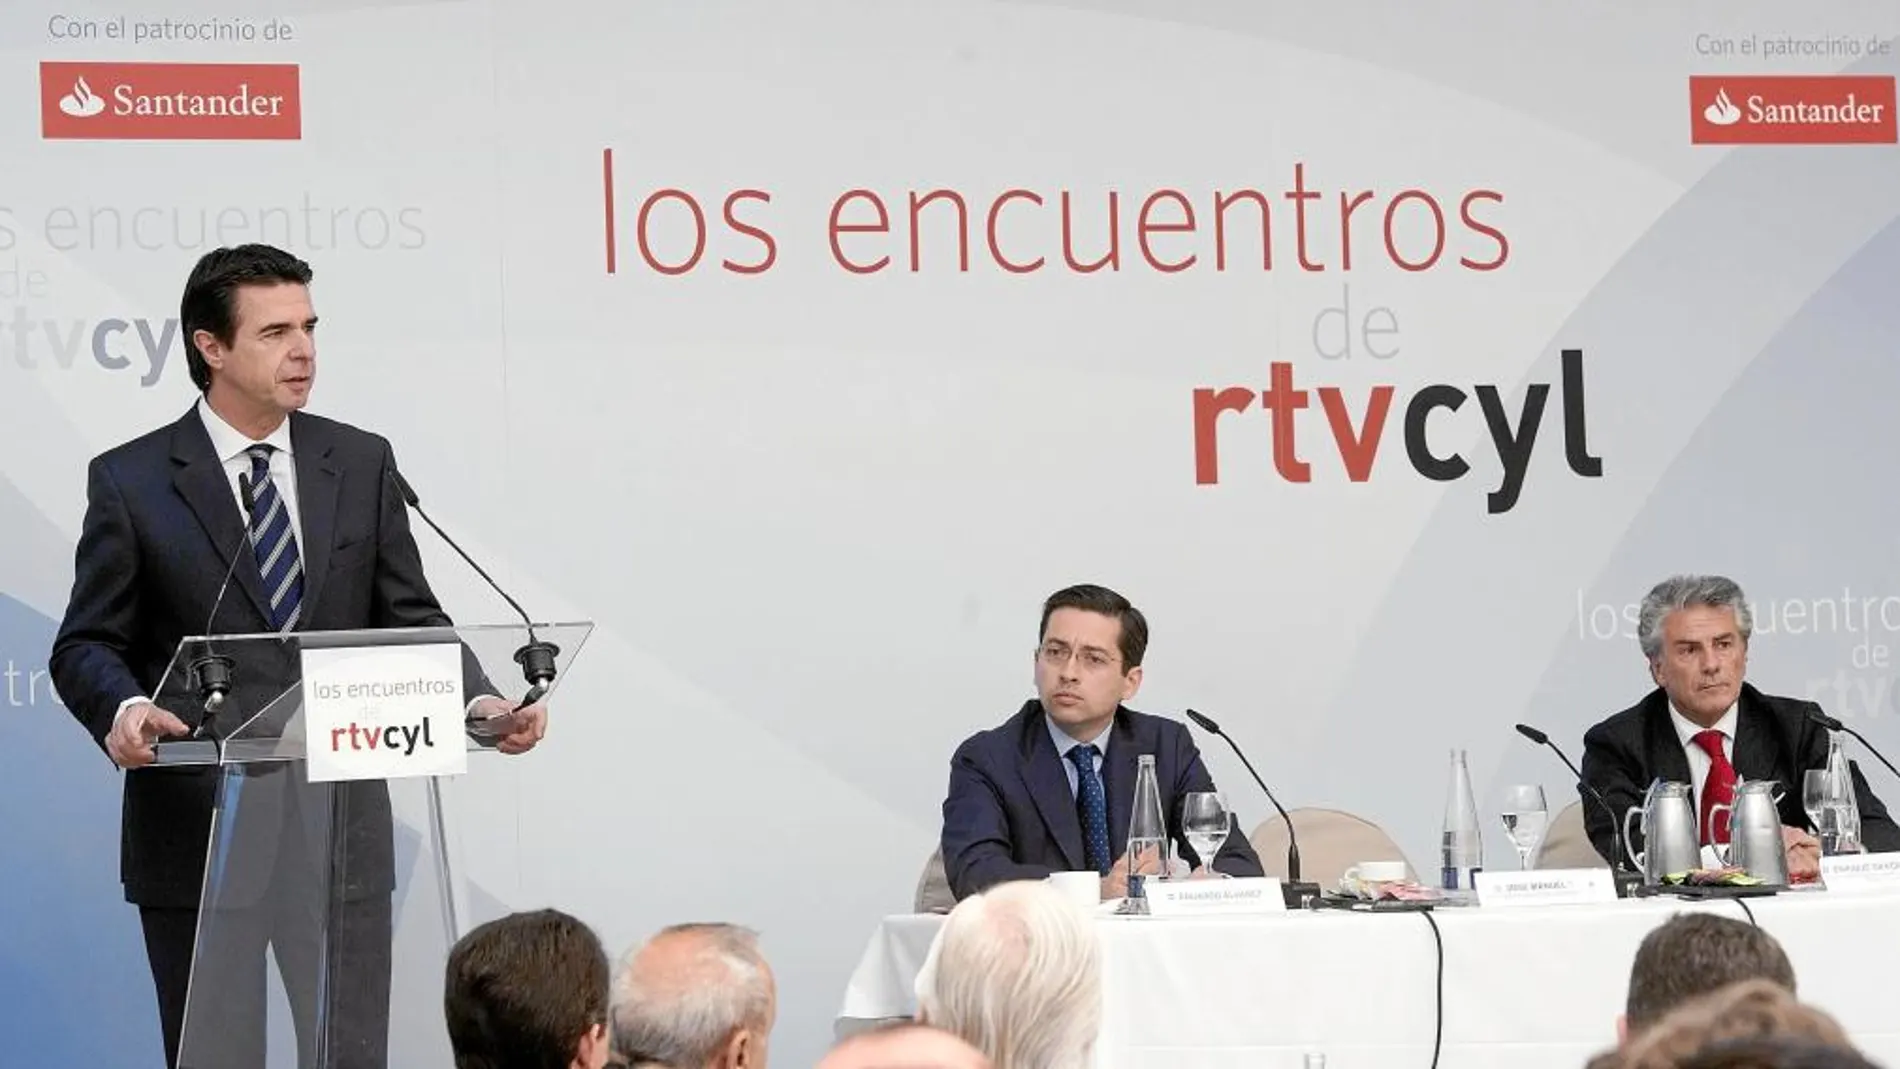 José Manuel Soria interviene el Palacio de la Merced. A su lado, Eduardo Álvarez, director general de RTVCyL, que moderó el acto, y Enrique García Candelas, del Banco Santander, principal patrocinador del encuentro